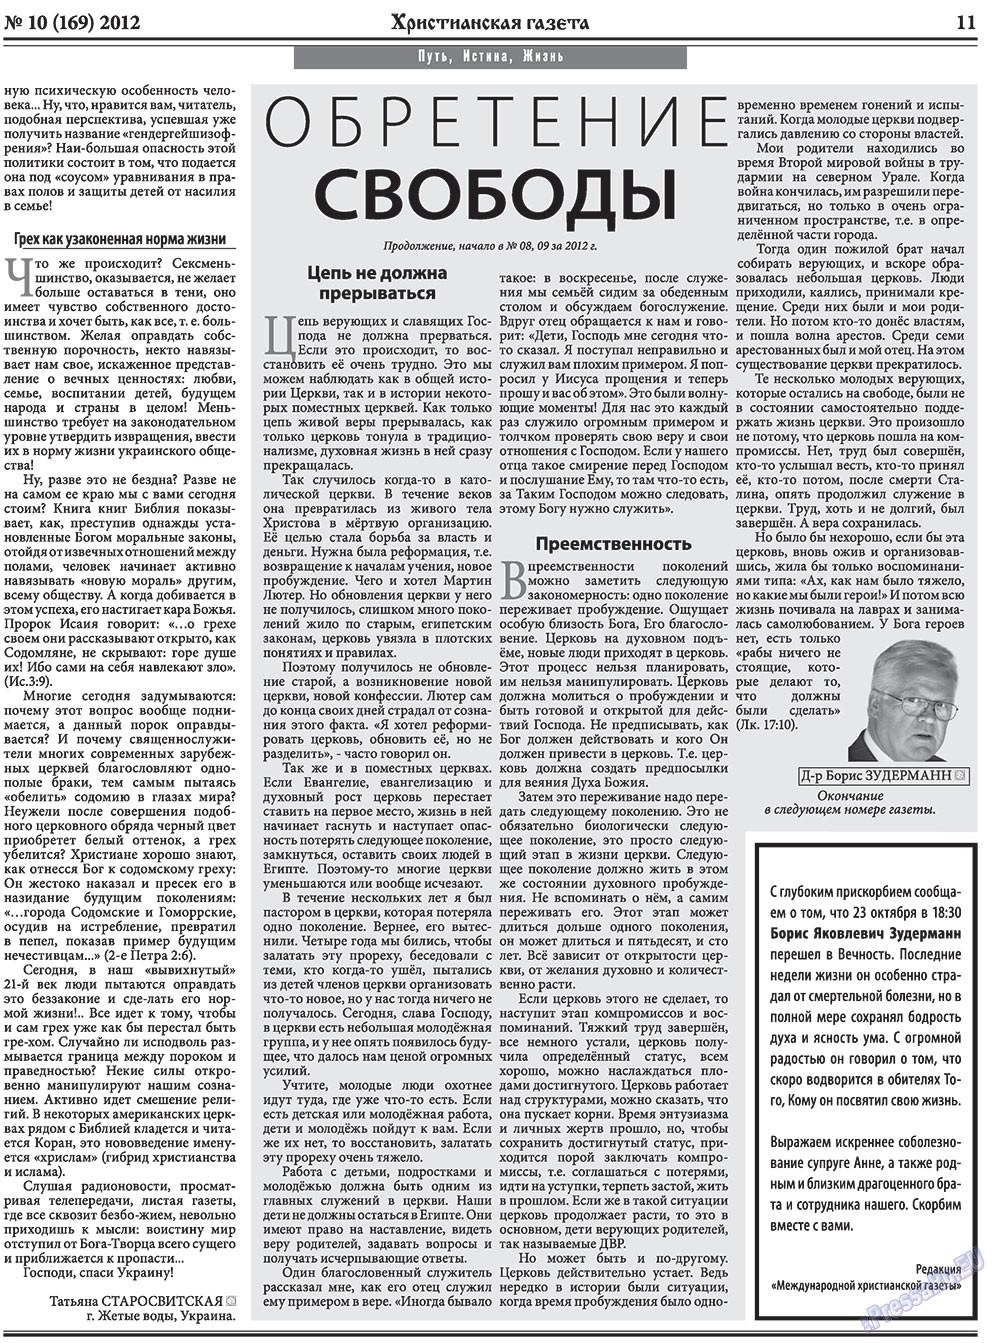 Христианская газета, газета. 2012 №10 стр.11